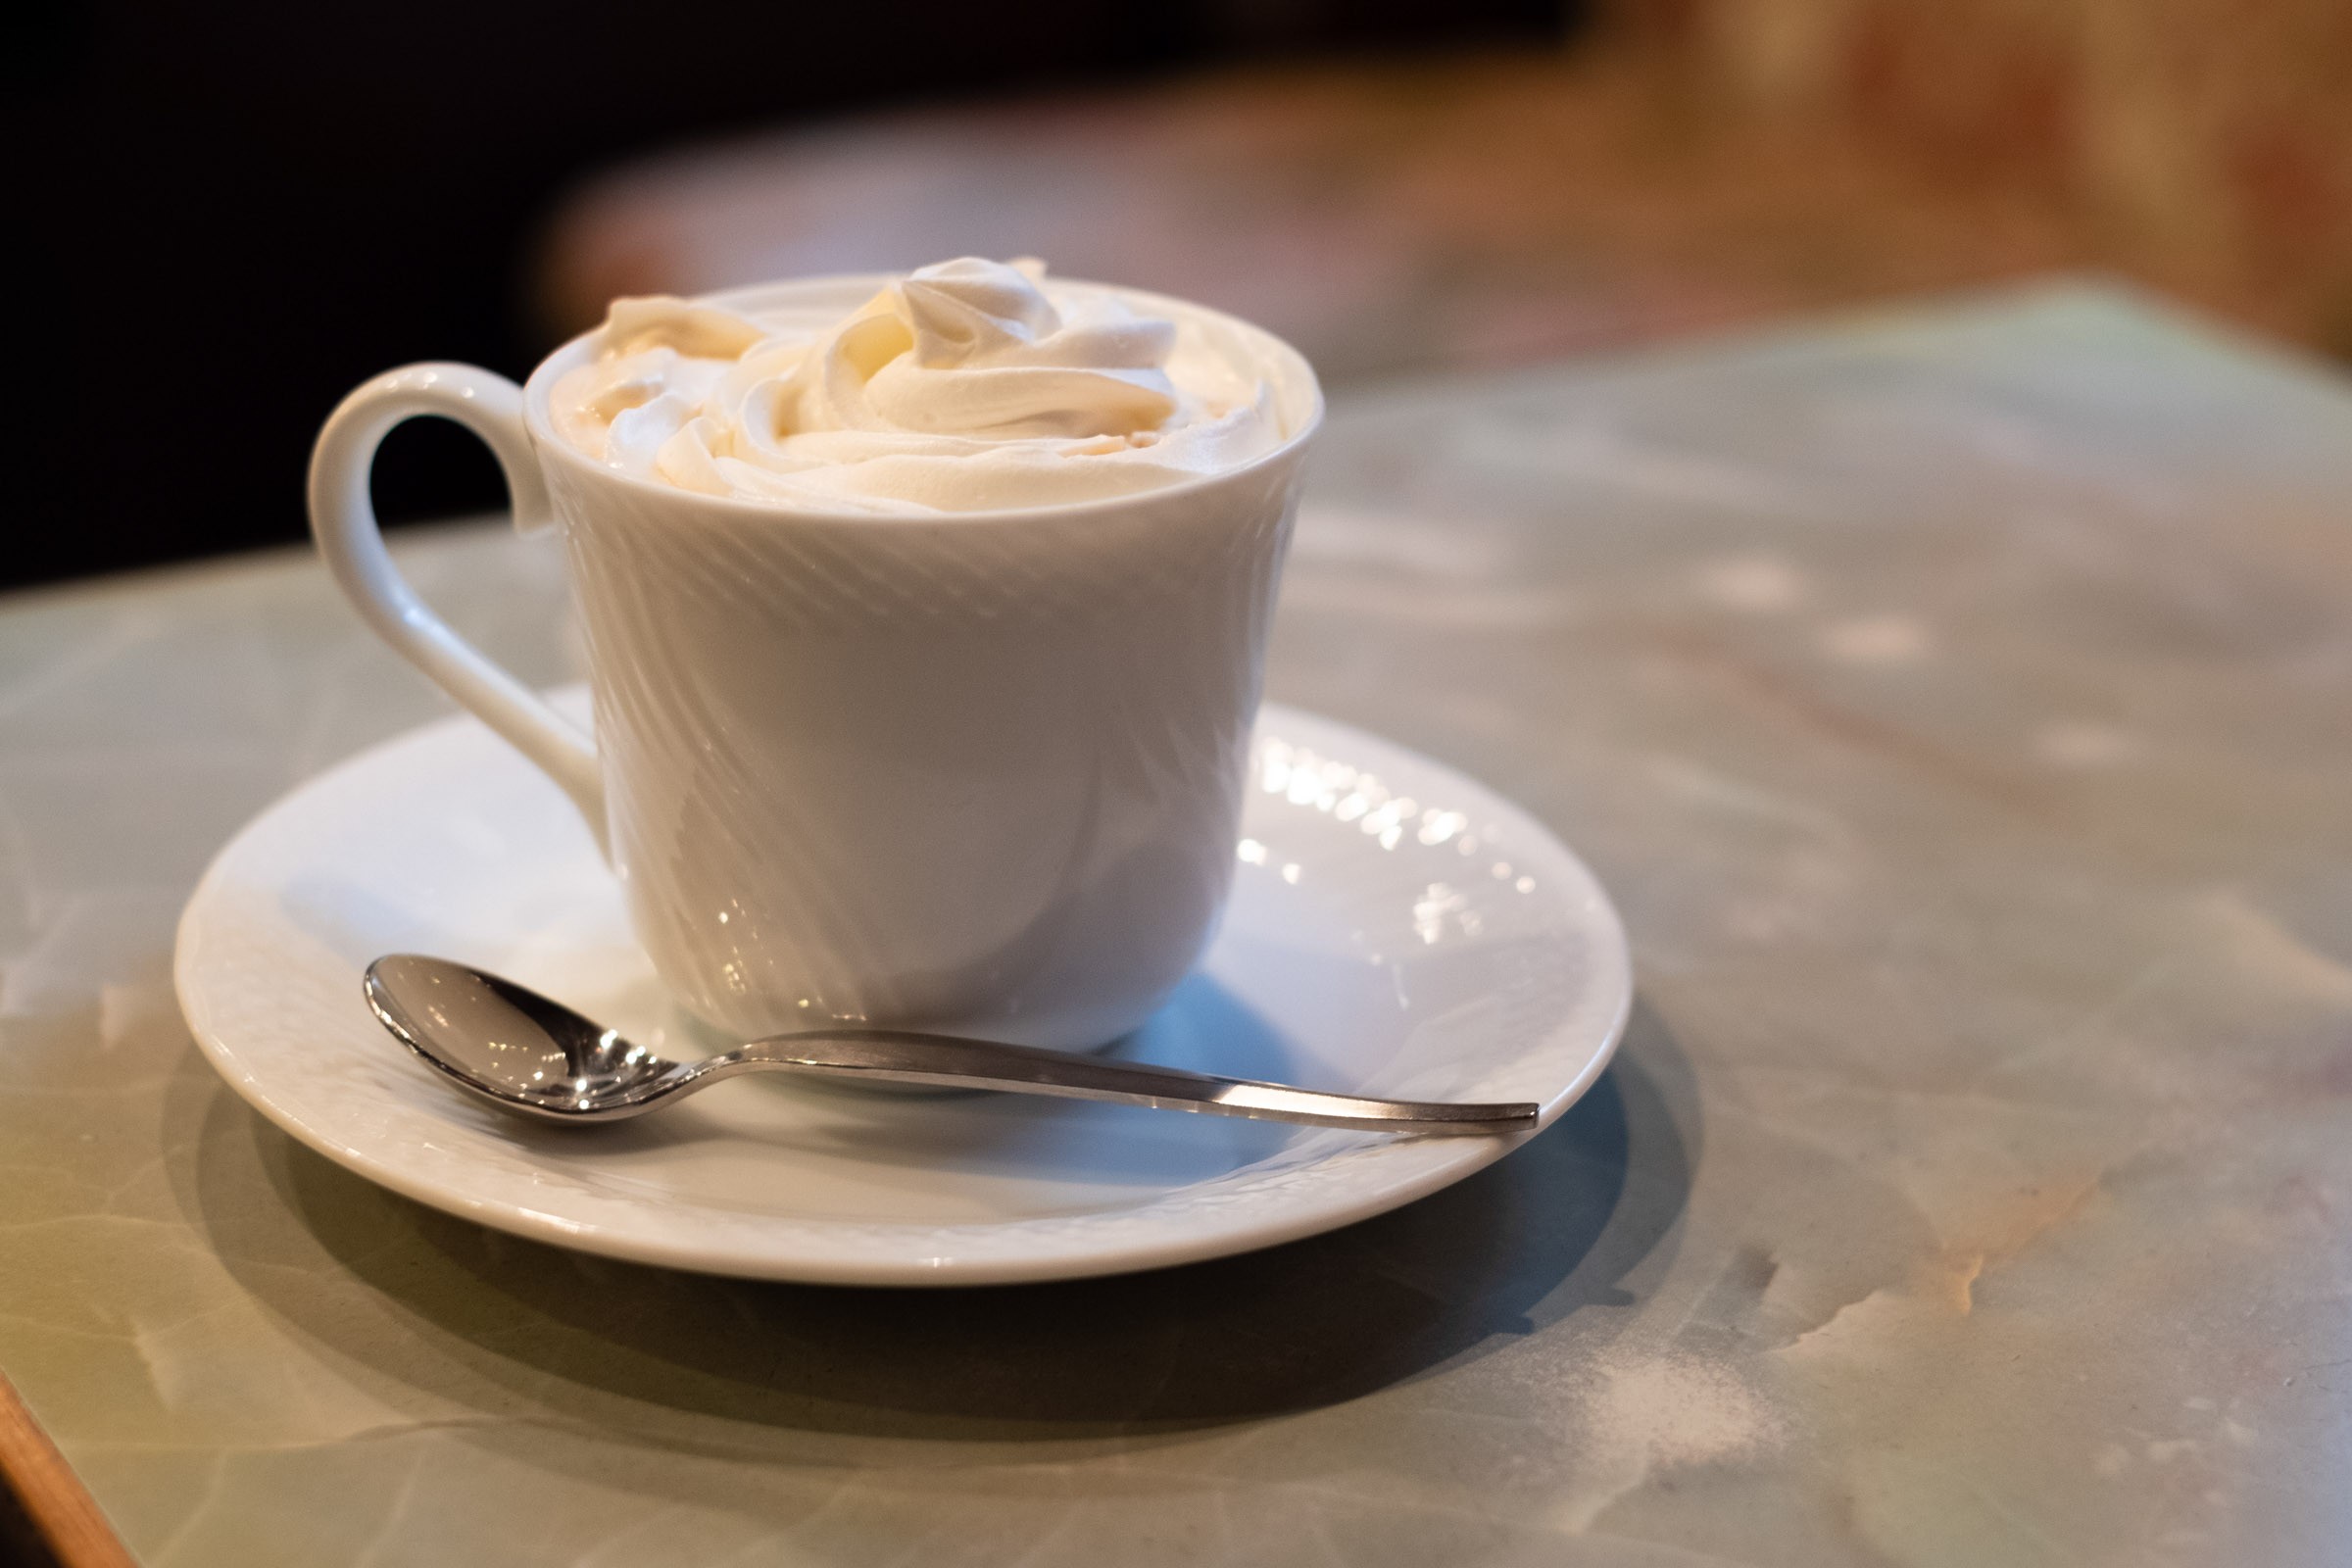 ウインナーコーヒー 昭和世代には懐かしい想い出の珈琲 フリー写真有